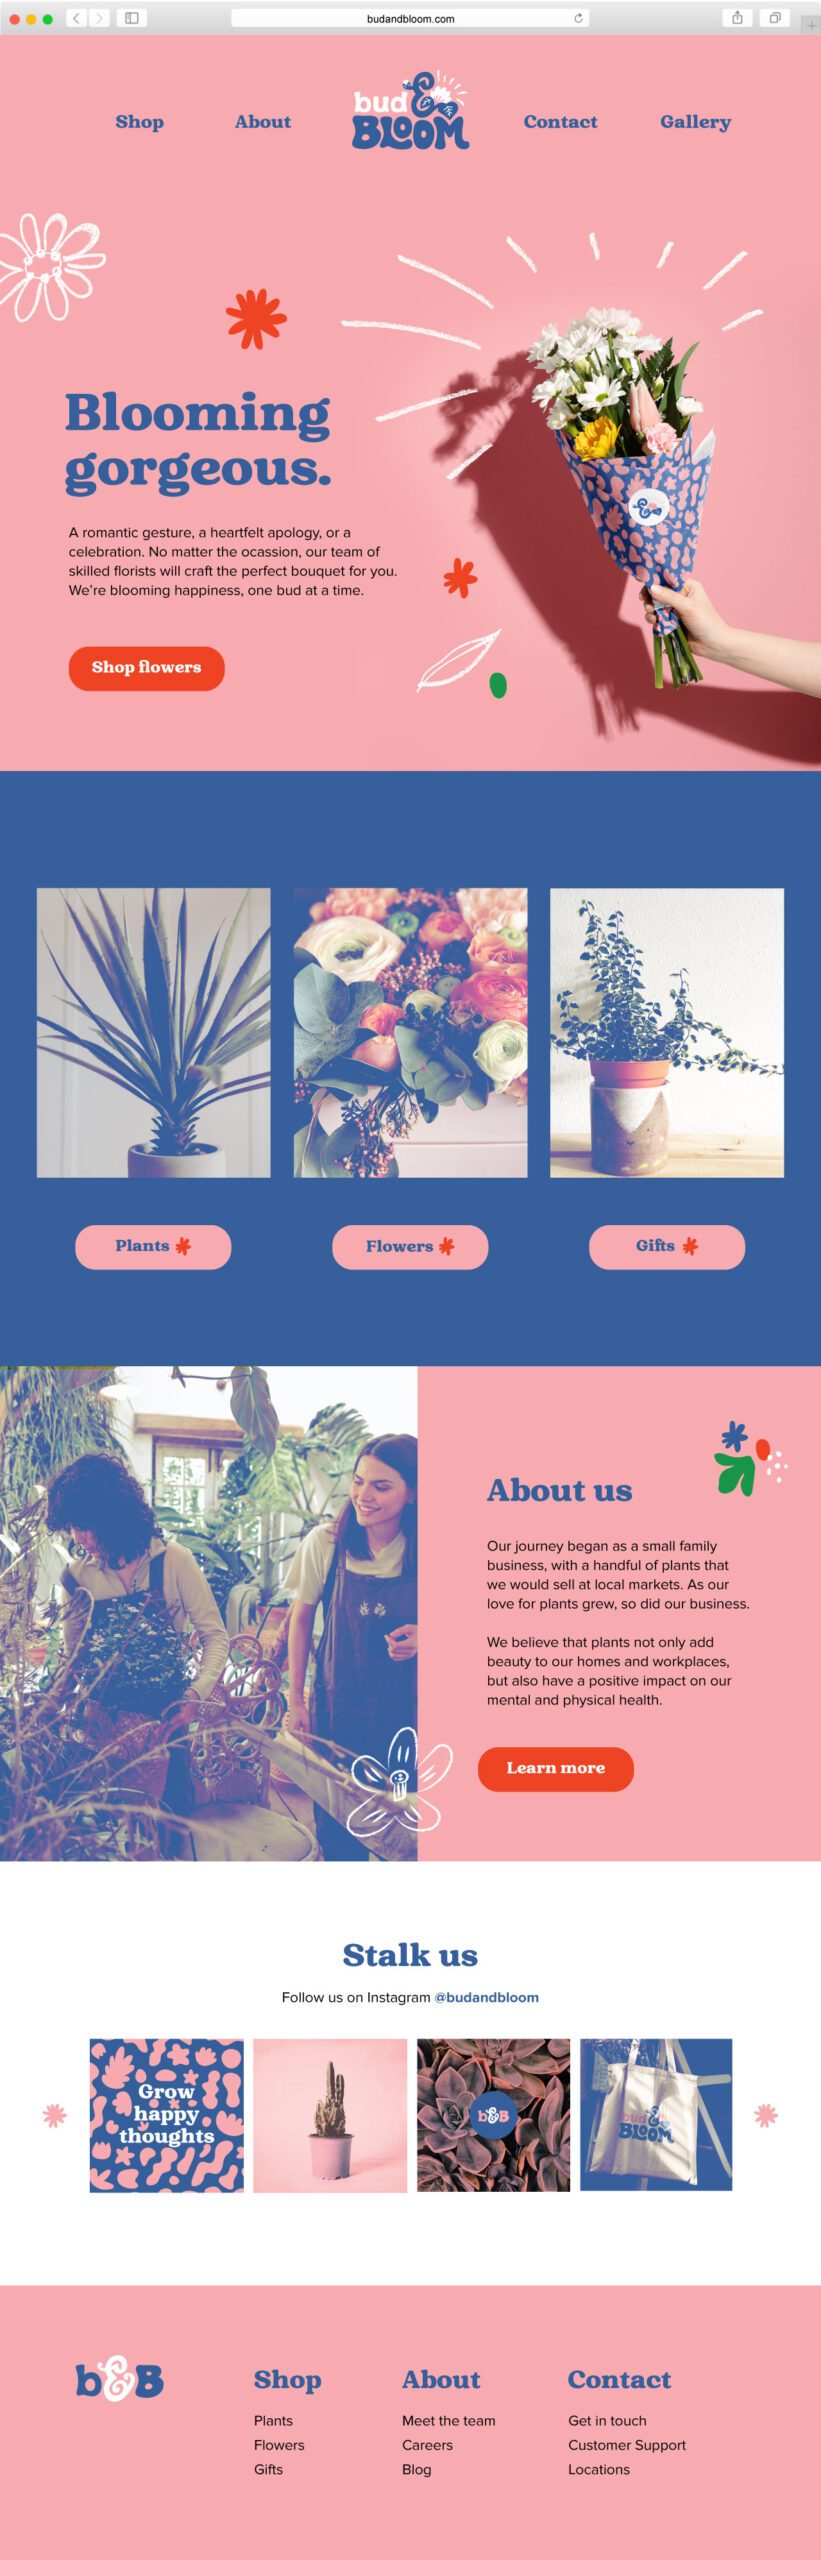 Website home page design for Bud & Bloom